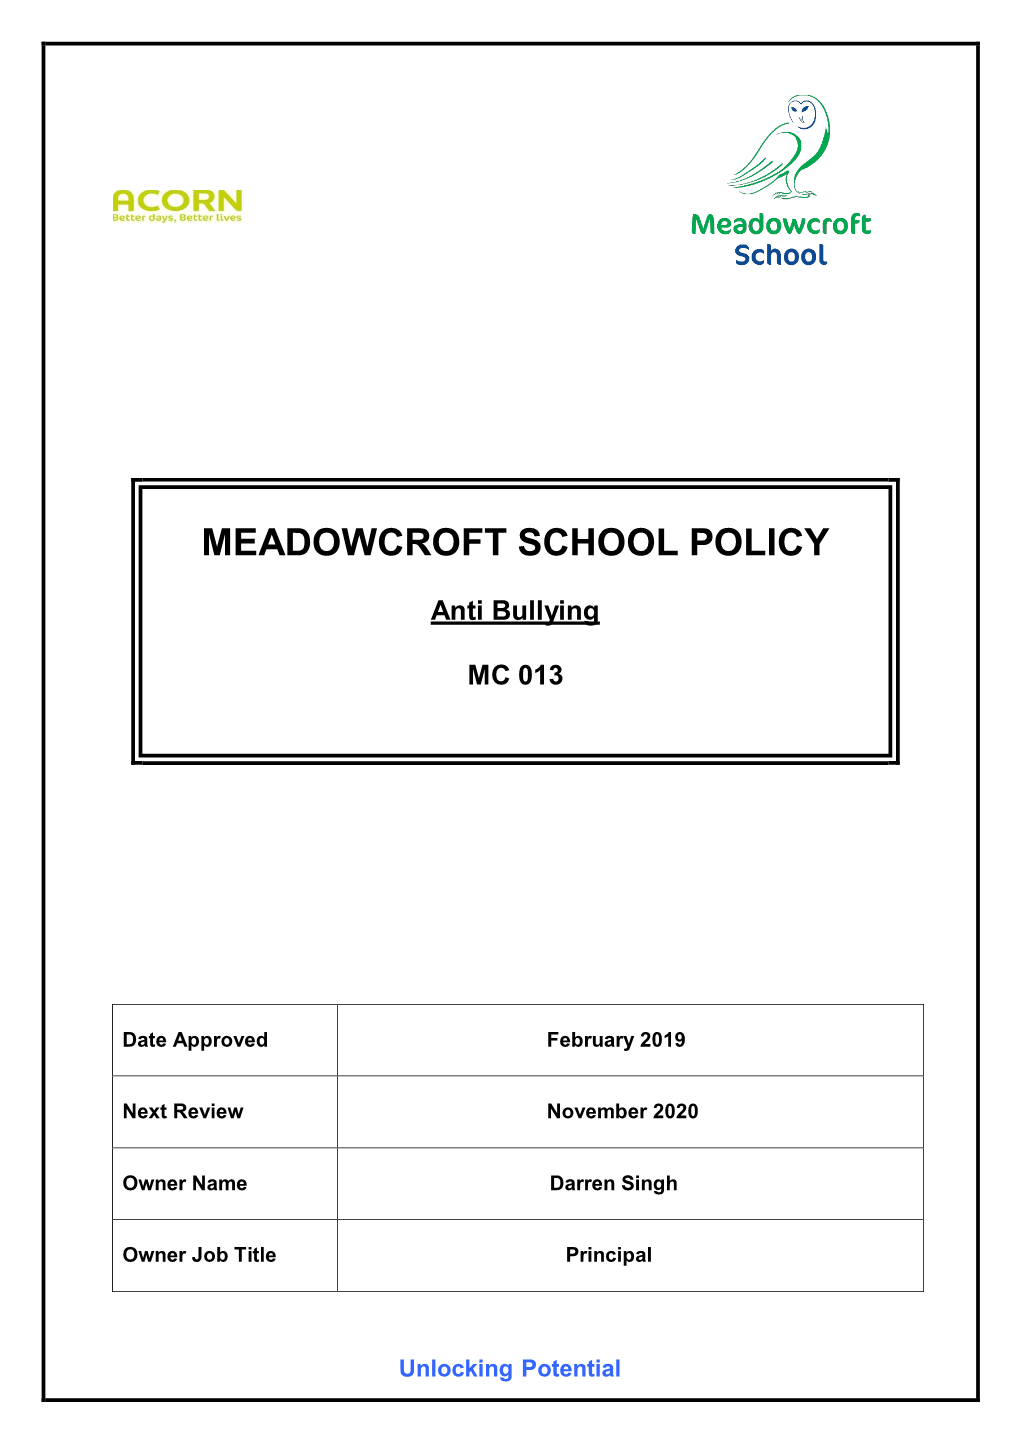 MEADOWCROFT SCHOOL POLICY Anti Bullying MC